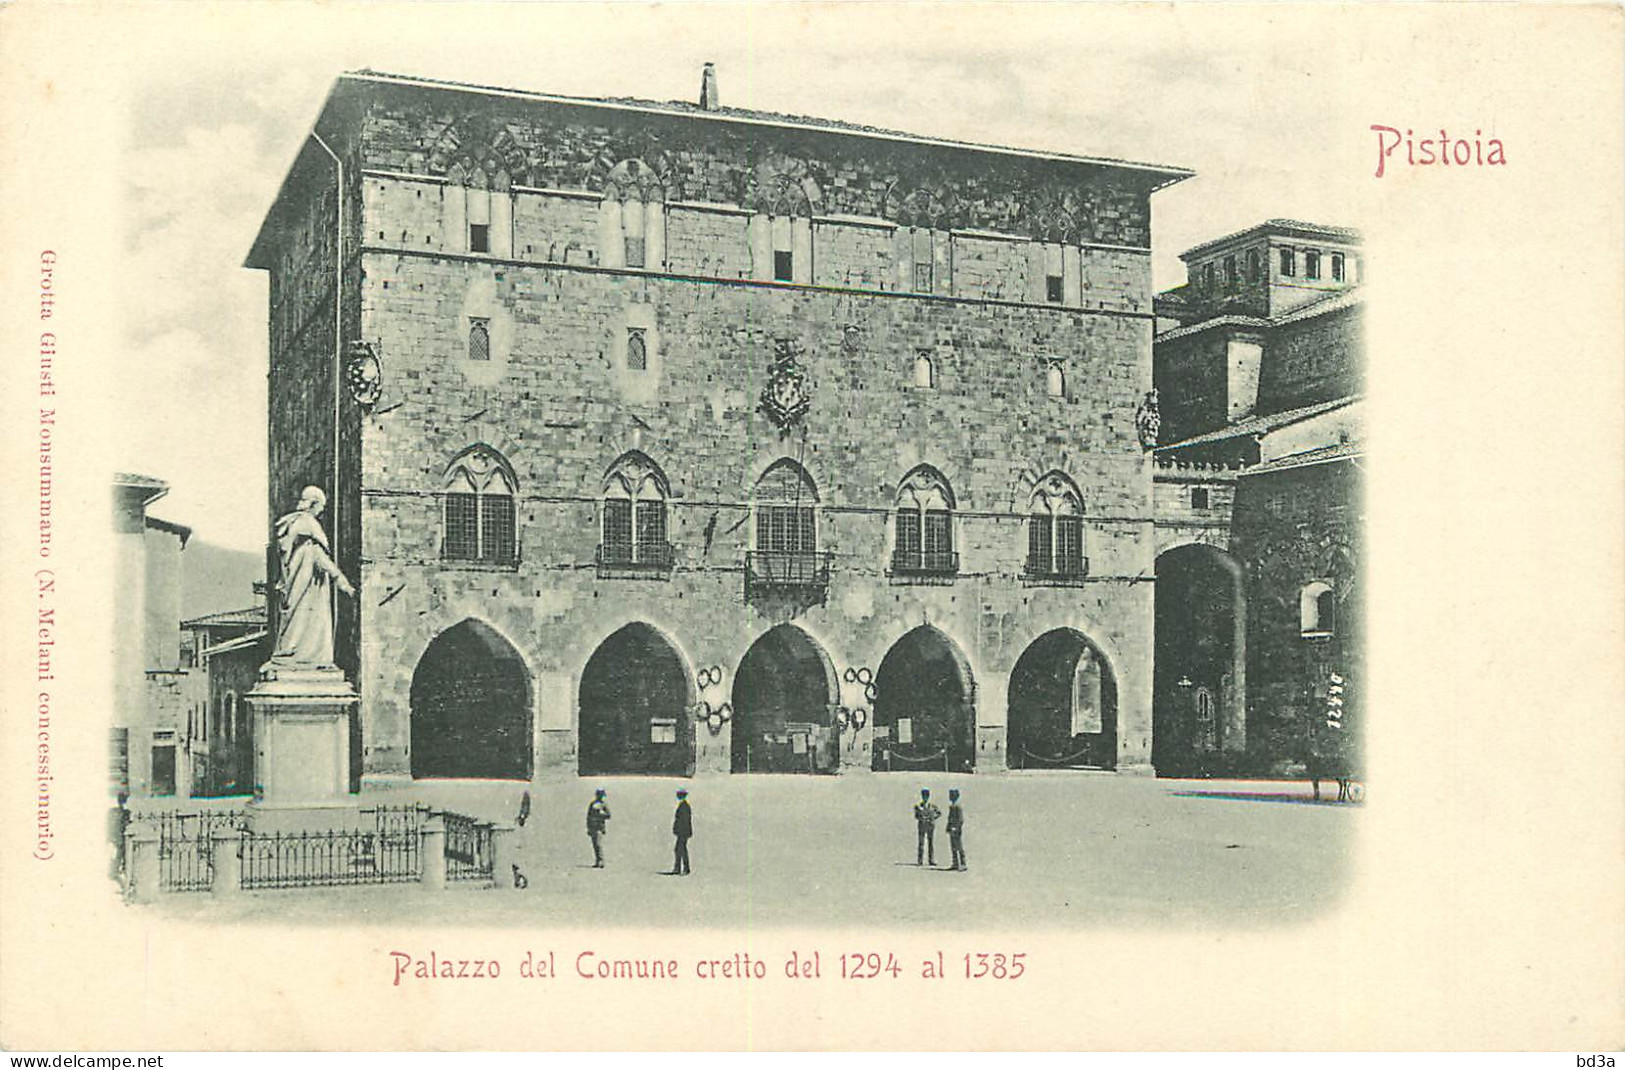  ITALIA  PISTOIA  Palazzo Del Comune Cretto Del 1294 Al 1385 - Pistoia